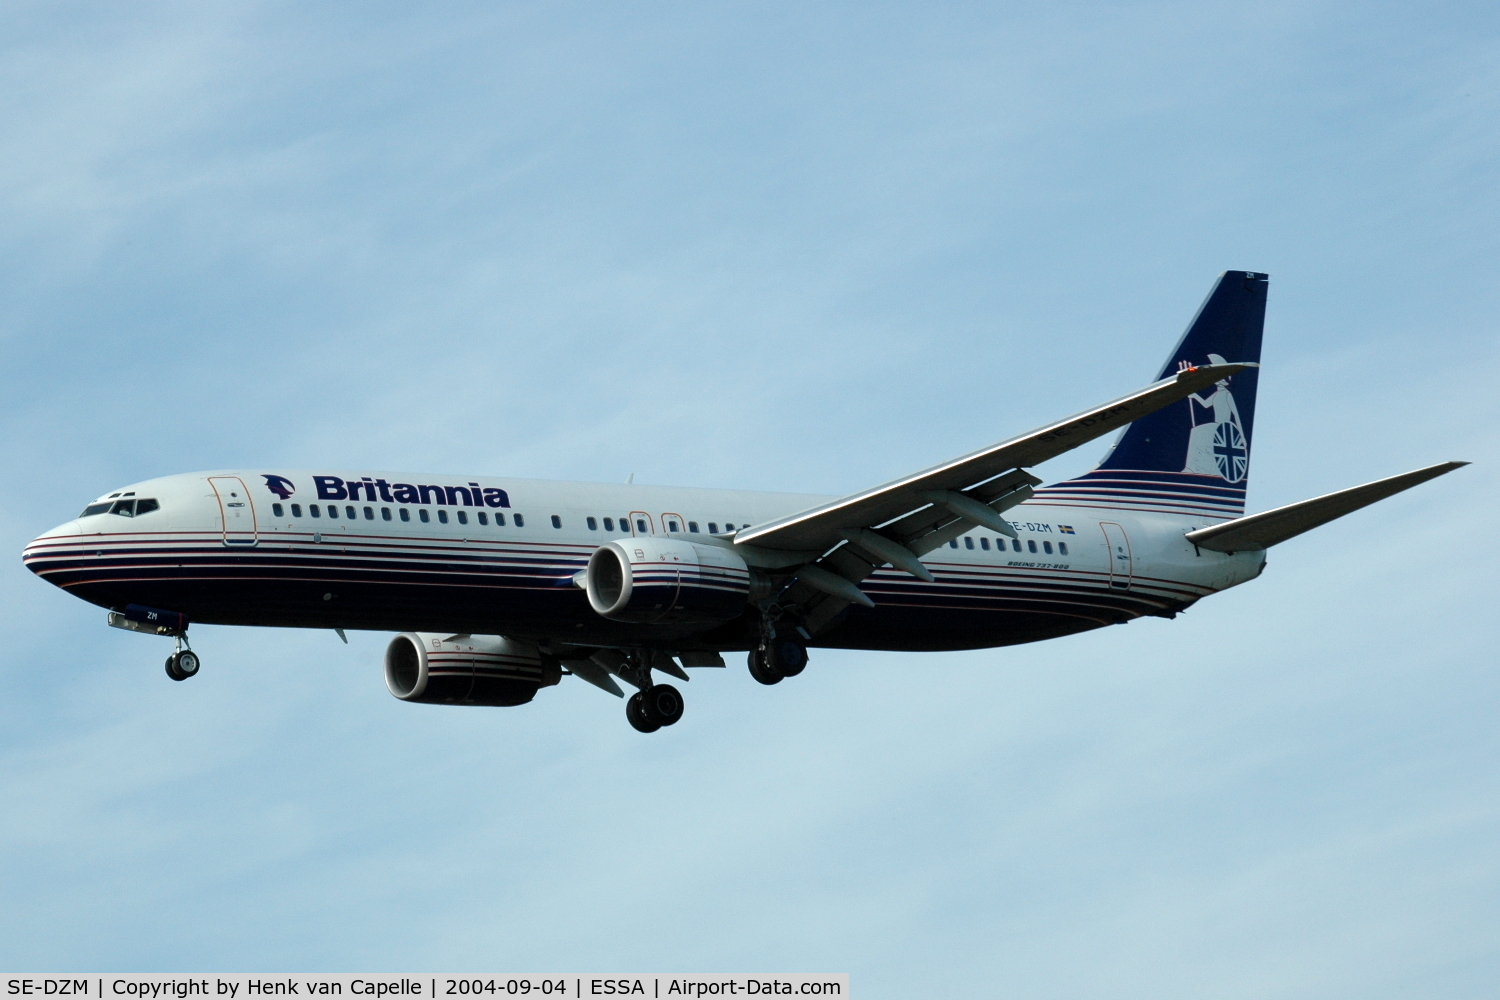 SE-DZM, 2000 Boeing 737-804 C/N 30466, Britannia Airways Boeing 737-800 About to land at Stockholm Arlanda airport, Sweden.